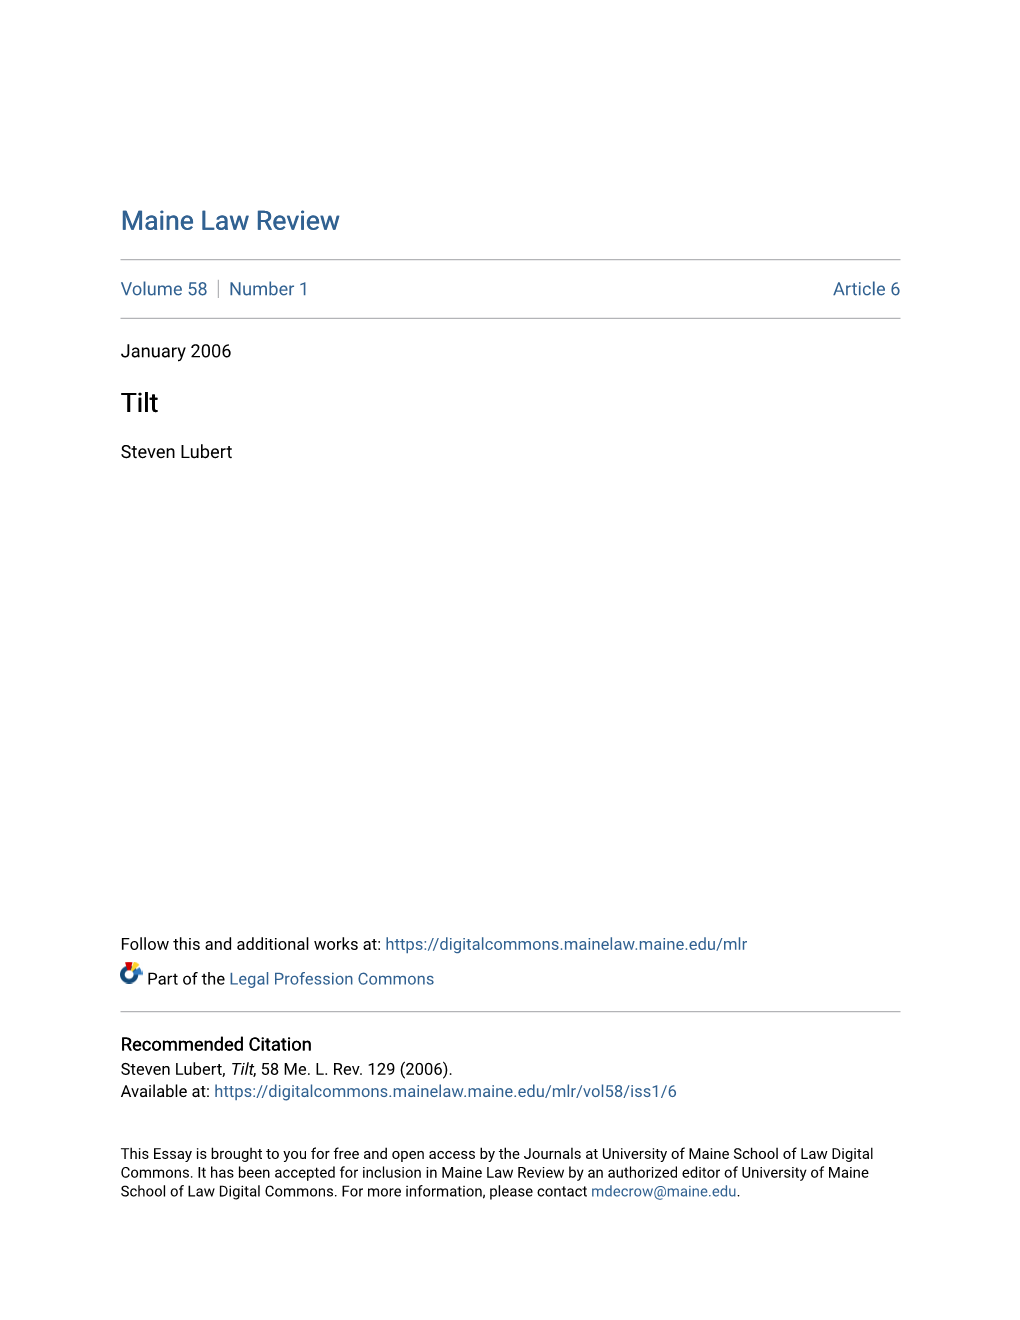 Maine Law Review Tilt